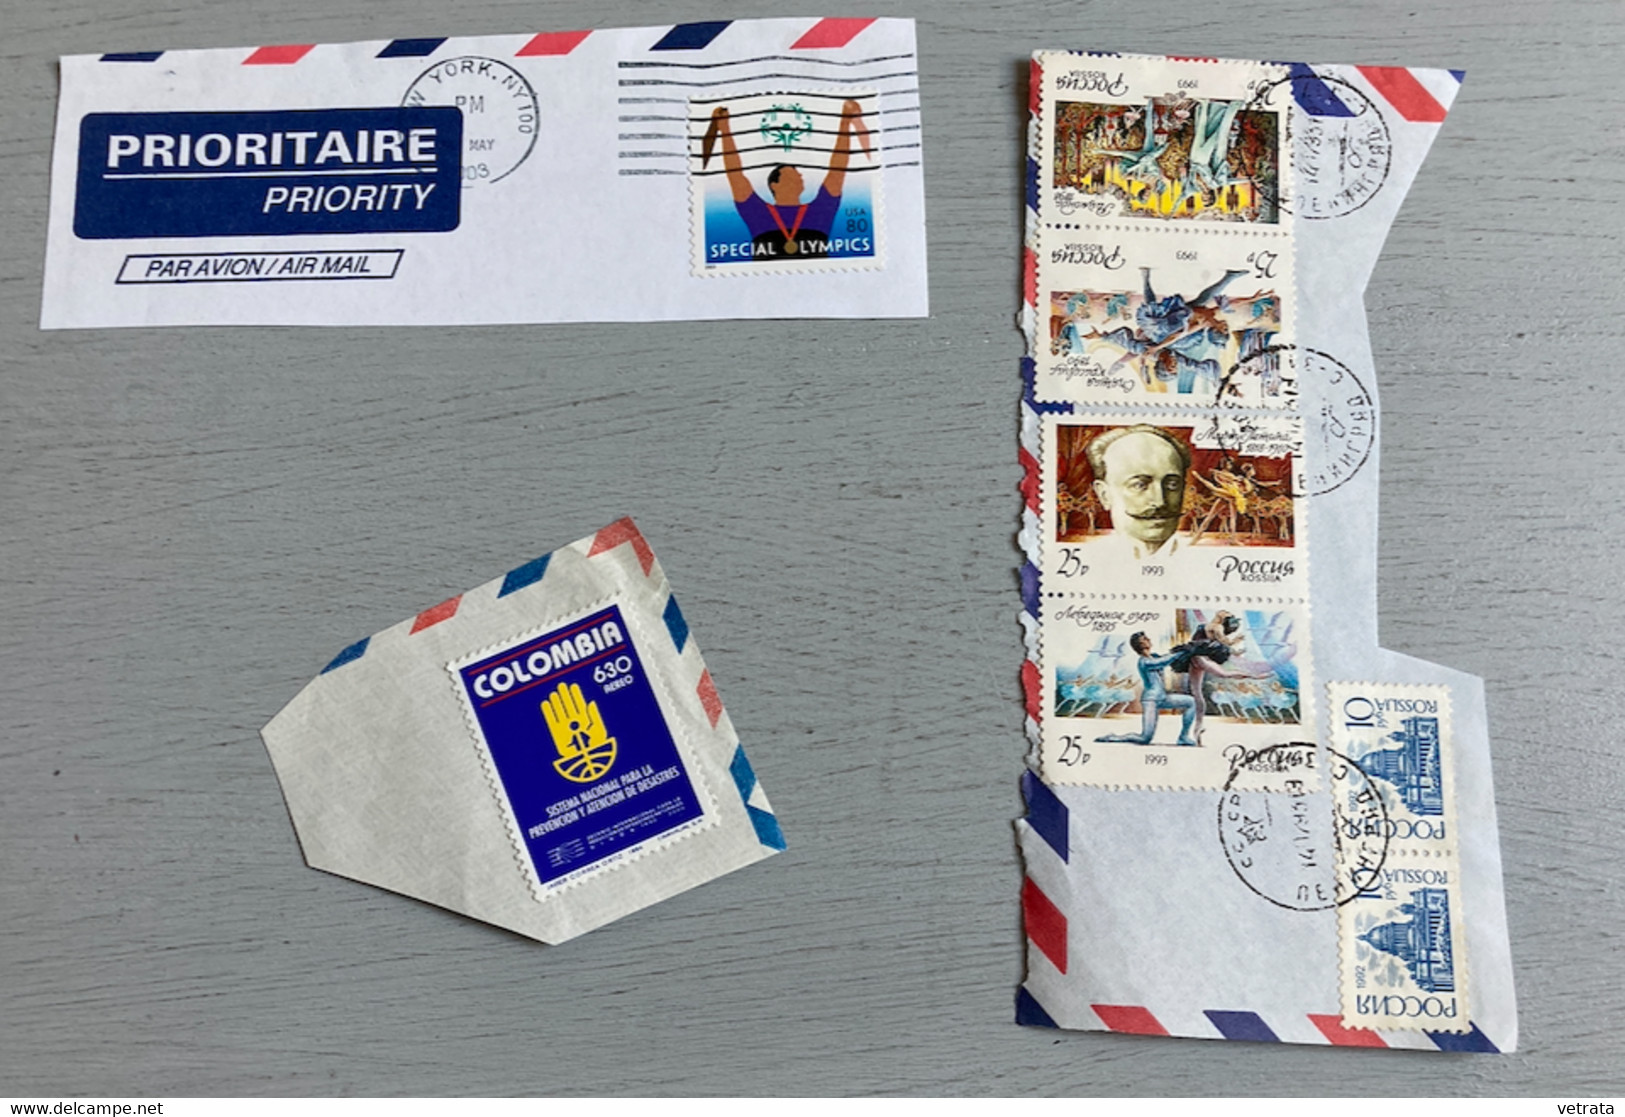 Lot de 175 timbres oblitérés de provenances diverses (avec doublons) : Suisse-Grande Bretagne-Danemark-Pays Bas-Nlle Zél